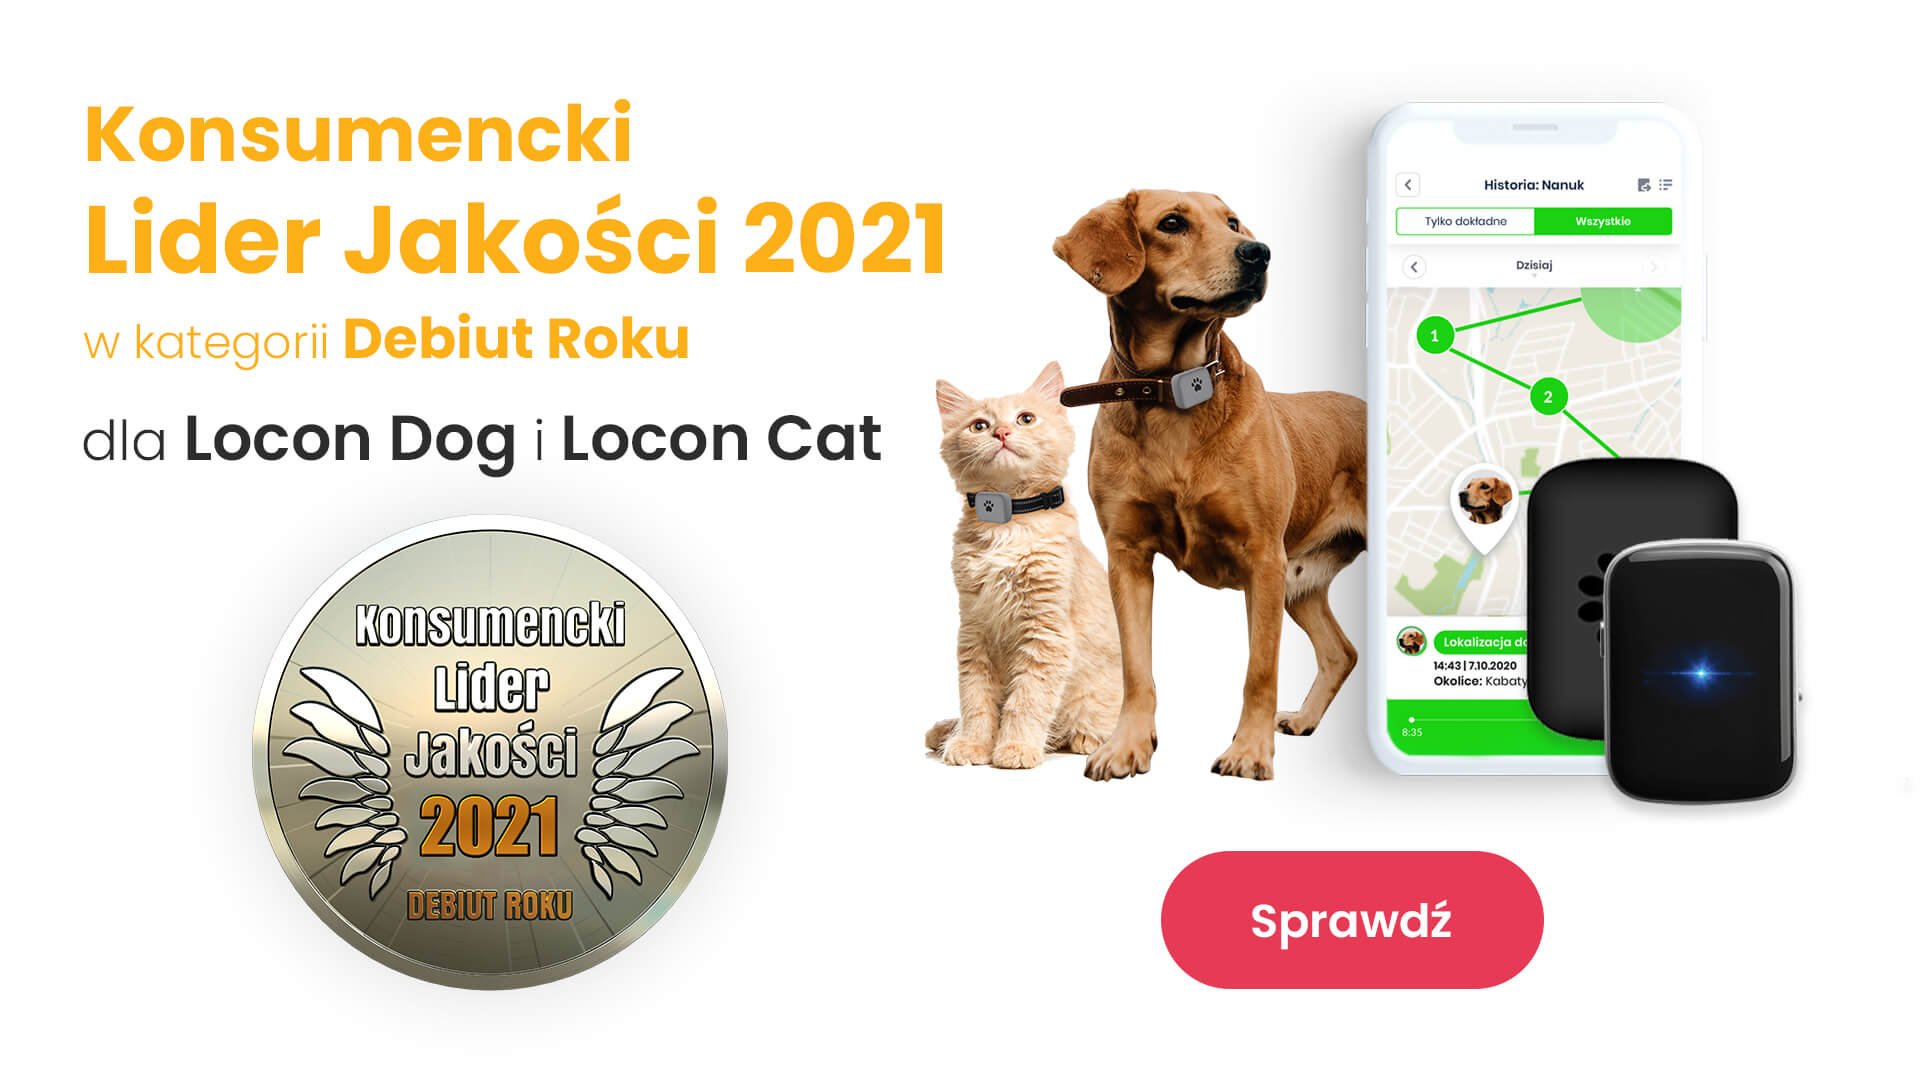 Certyfikat Locon Dog konsumencki lider jakości, czyli pies z nadajnikiem GPS marki Locon